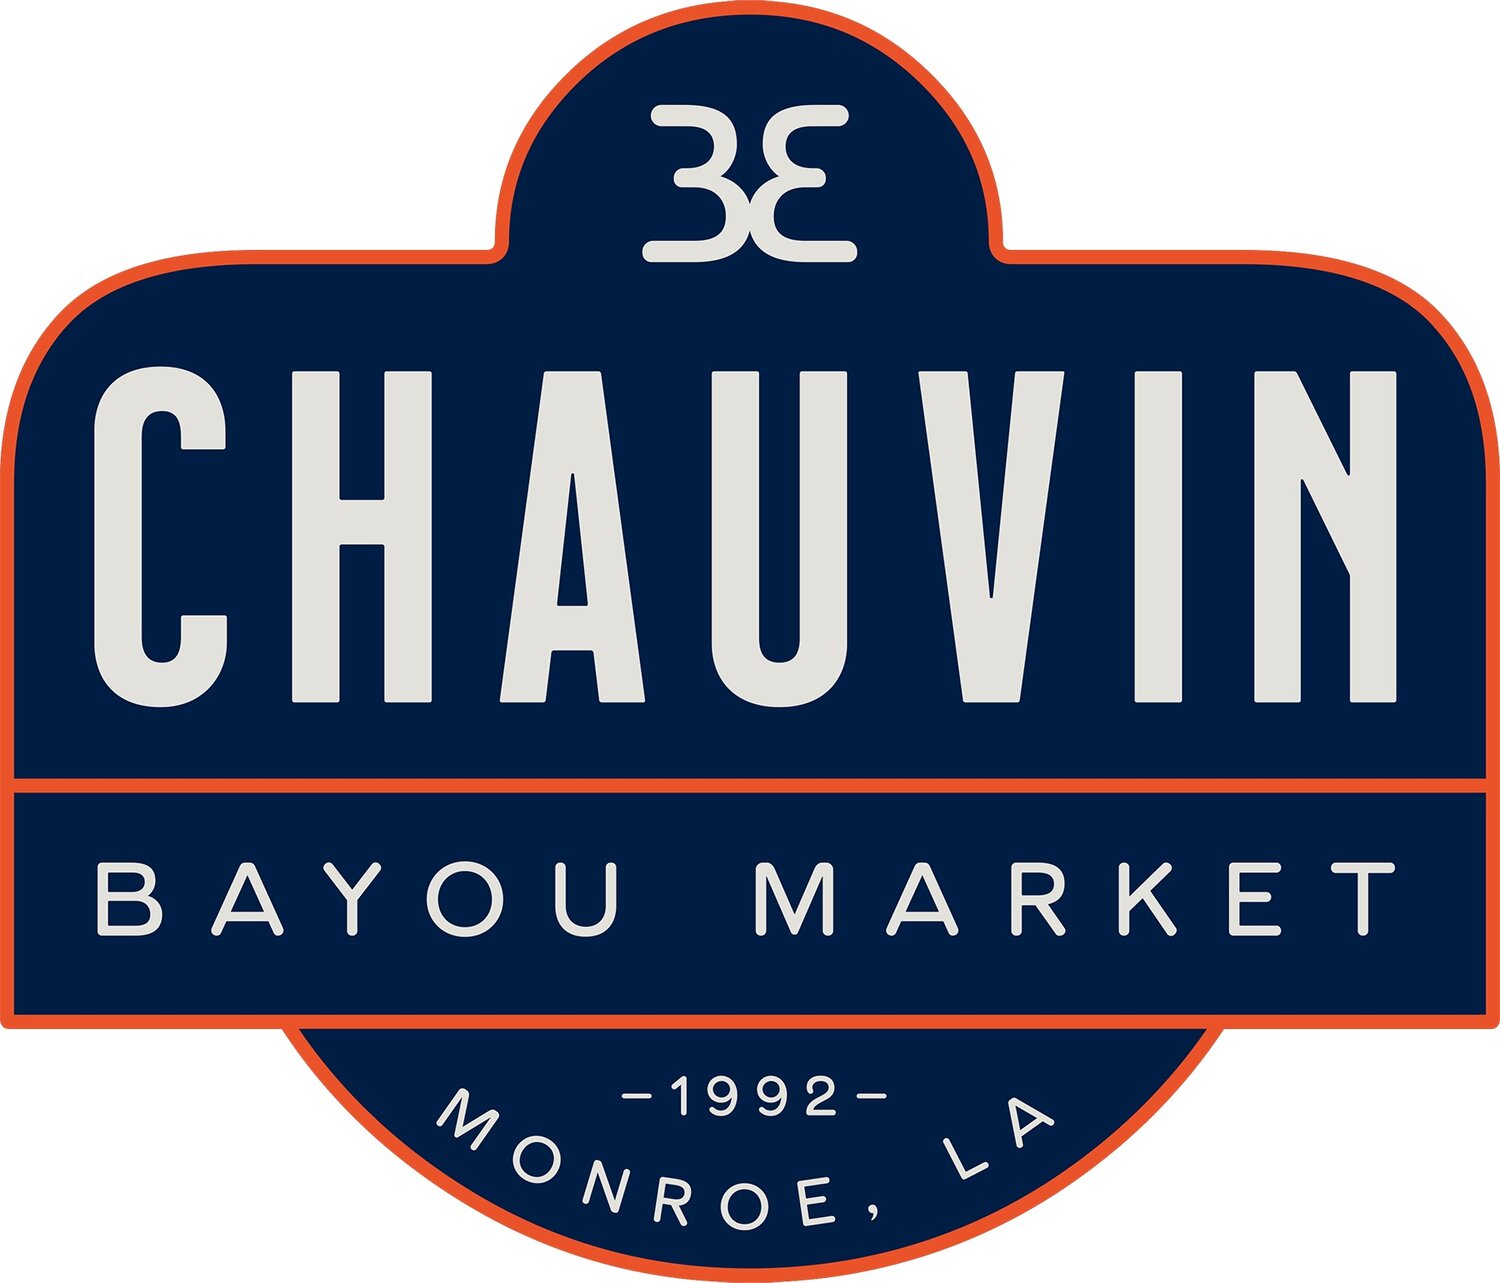 Chauvin Bayou Market